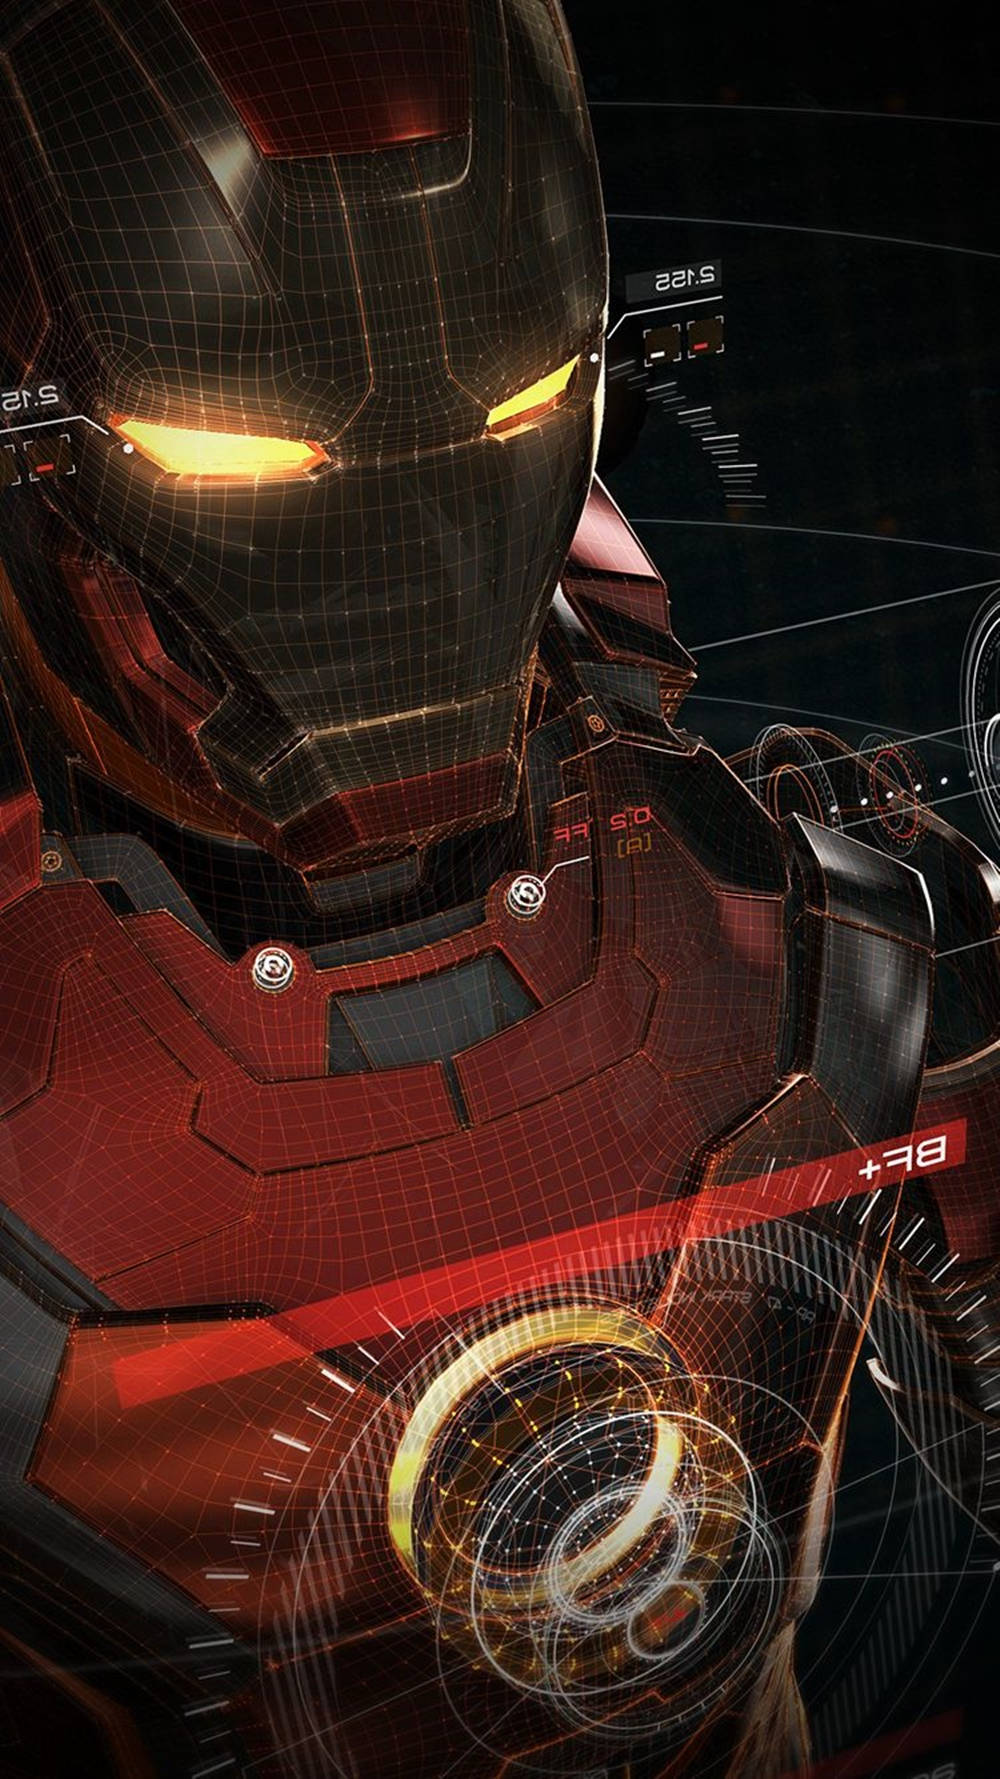 Caption: Stylish Iron Man Phone With Robotic Design Background